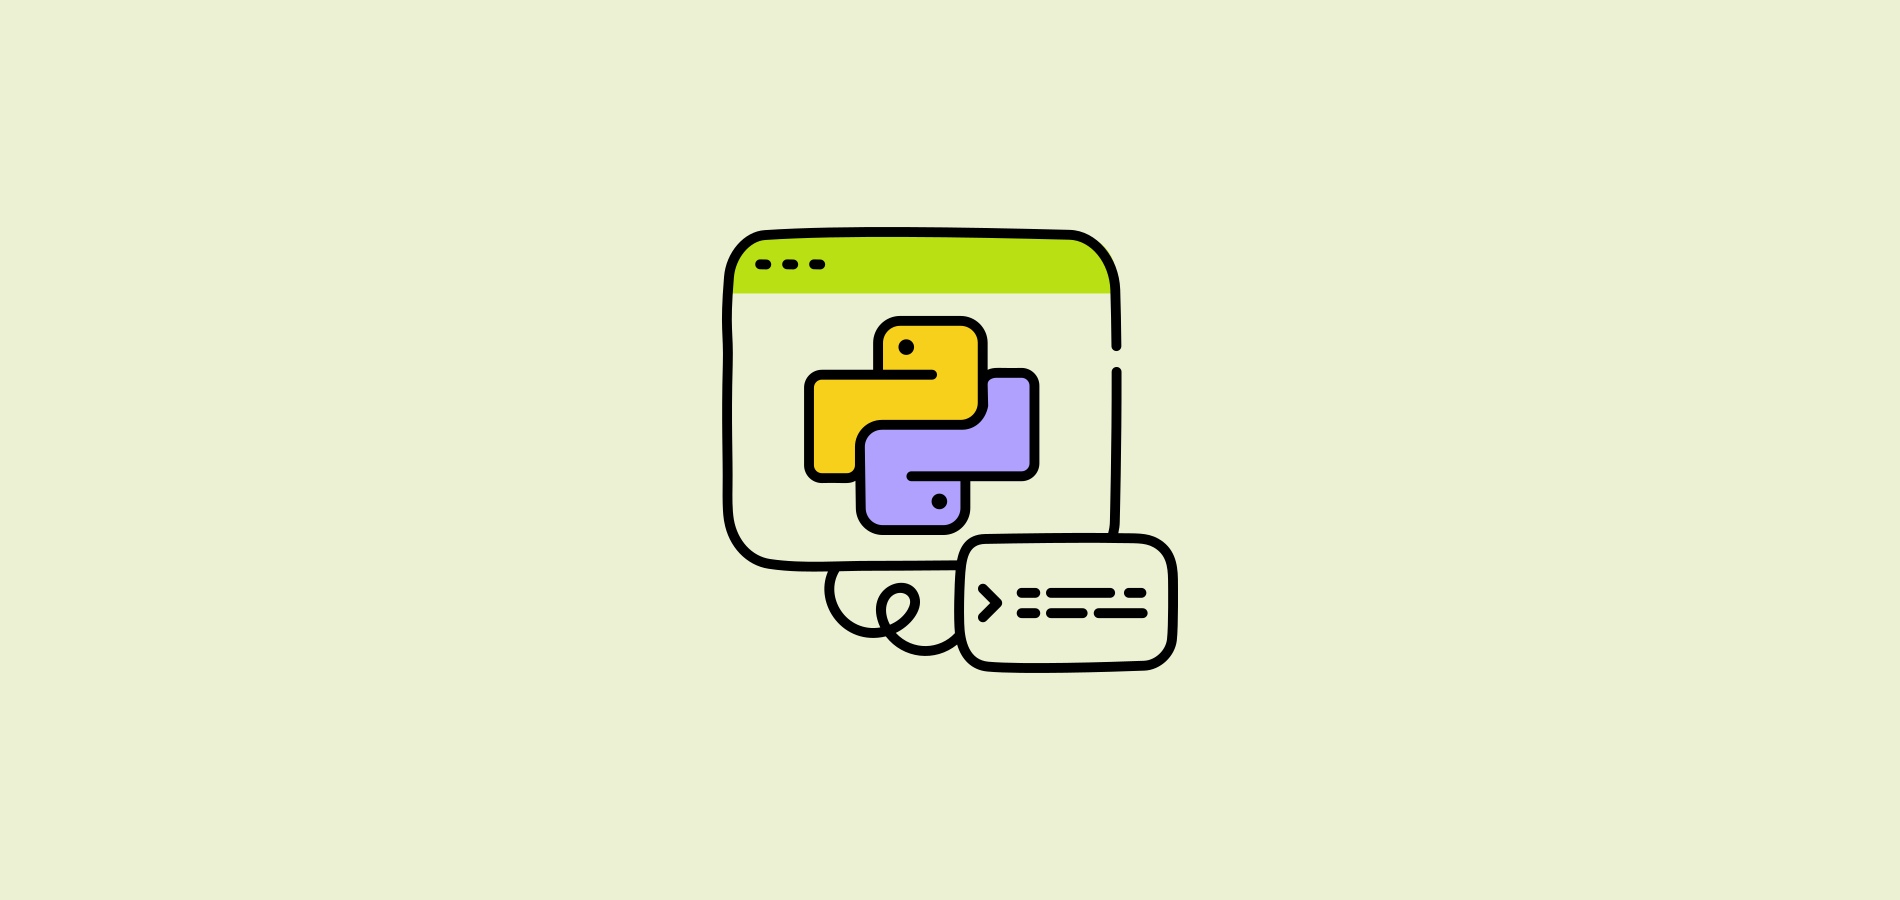 Удаление символа из строки Python: инструкция по удалению символов в Пайтон